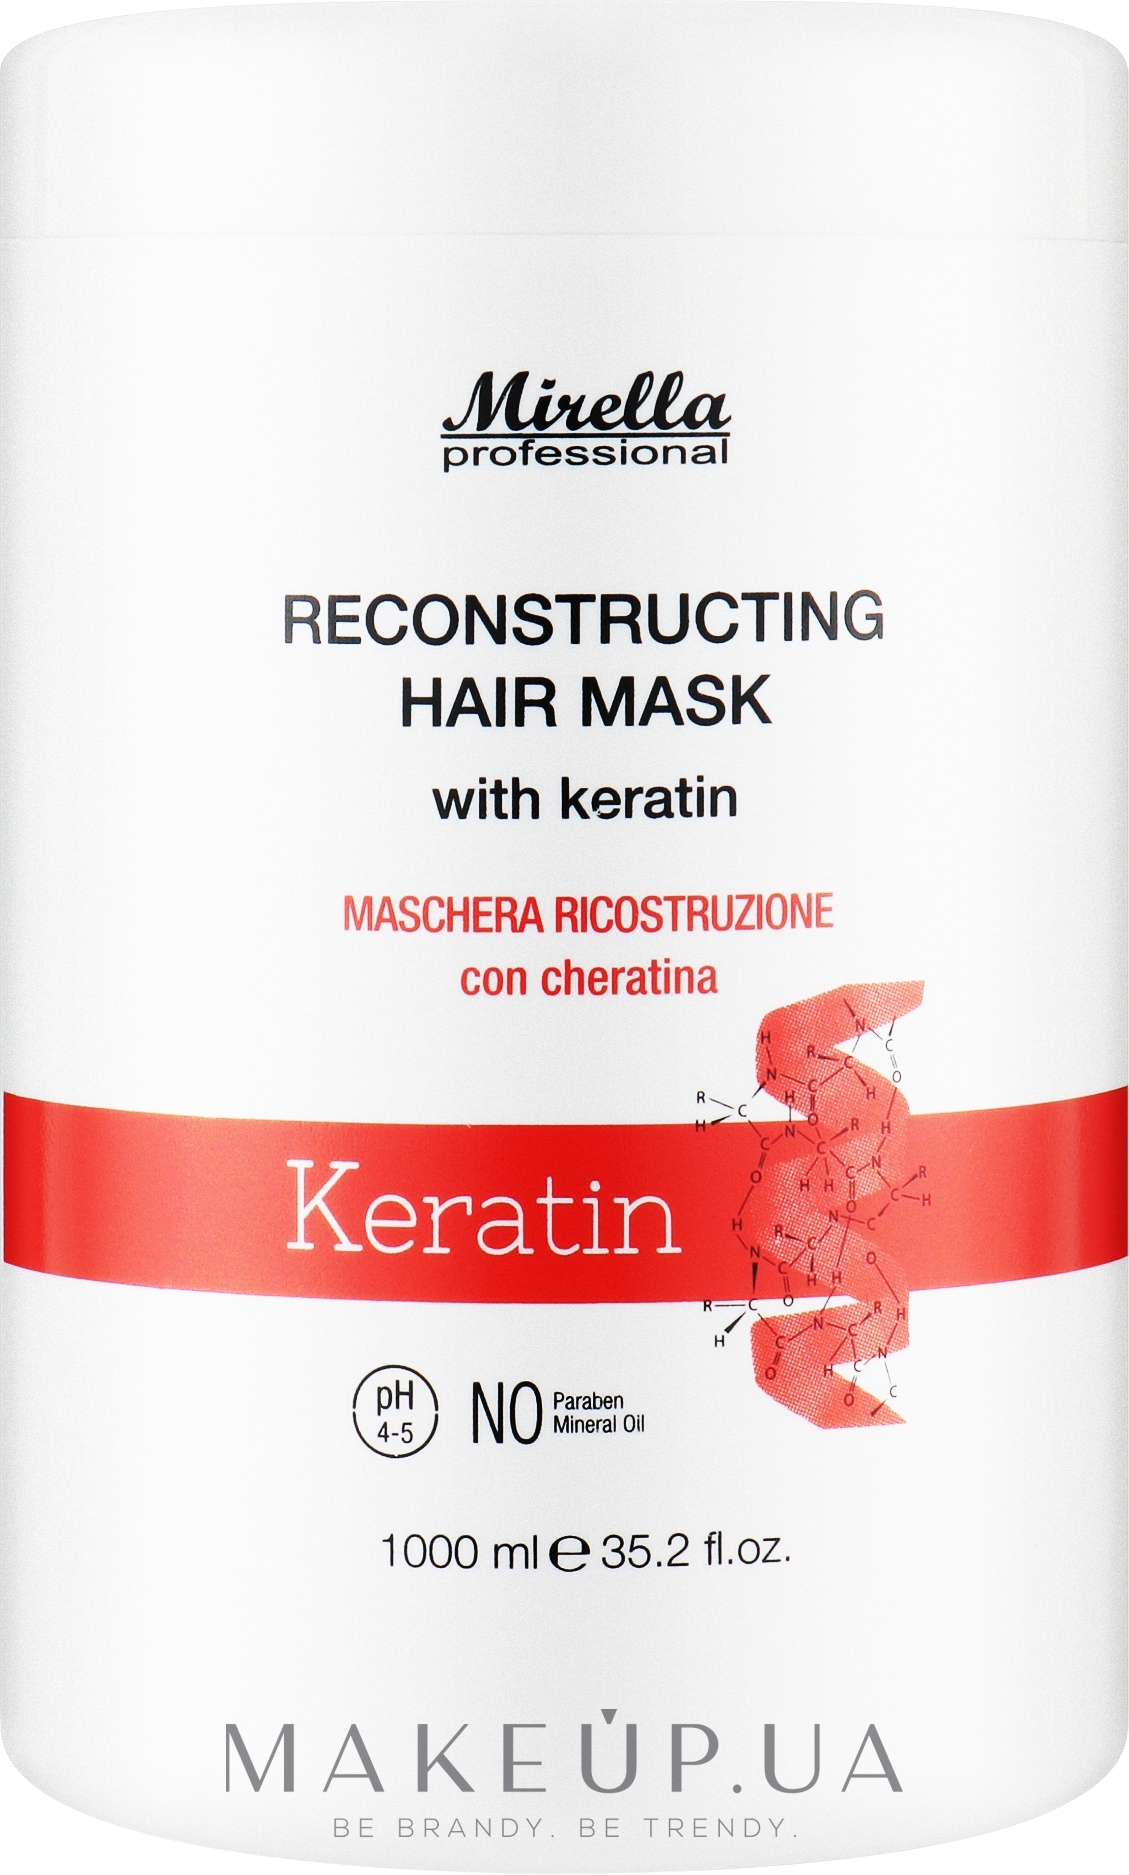 Маска для реконструкции волос с кератином - Mirella Professional Reconstructing Hair Mask with keratin — фото 1000ml